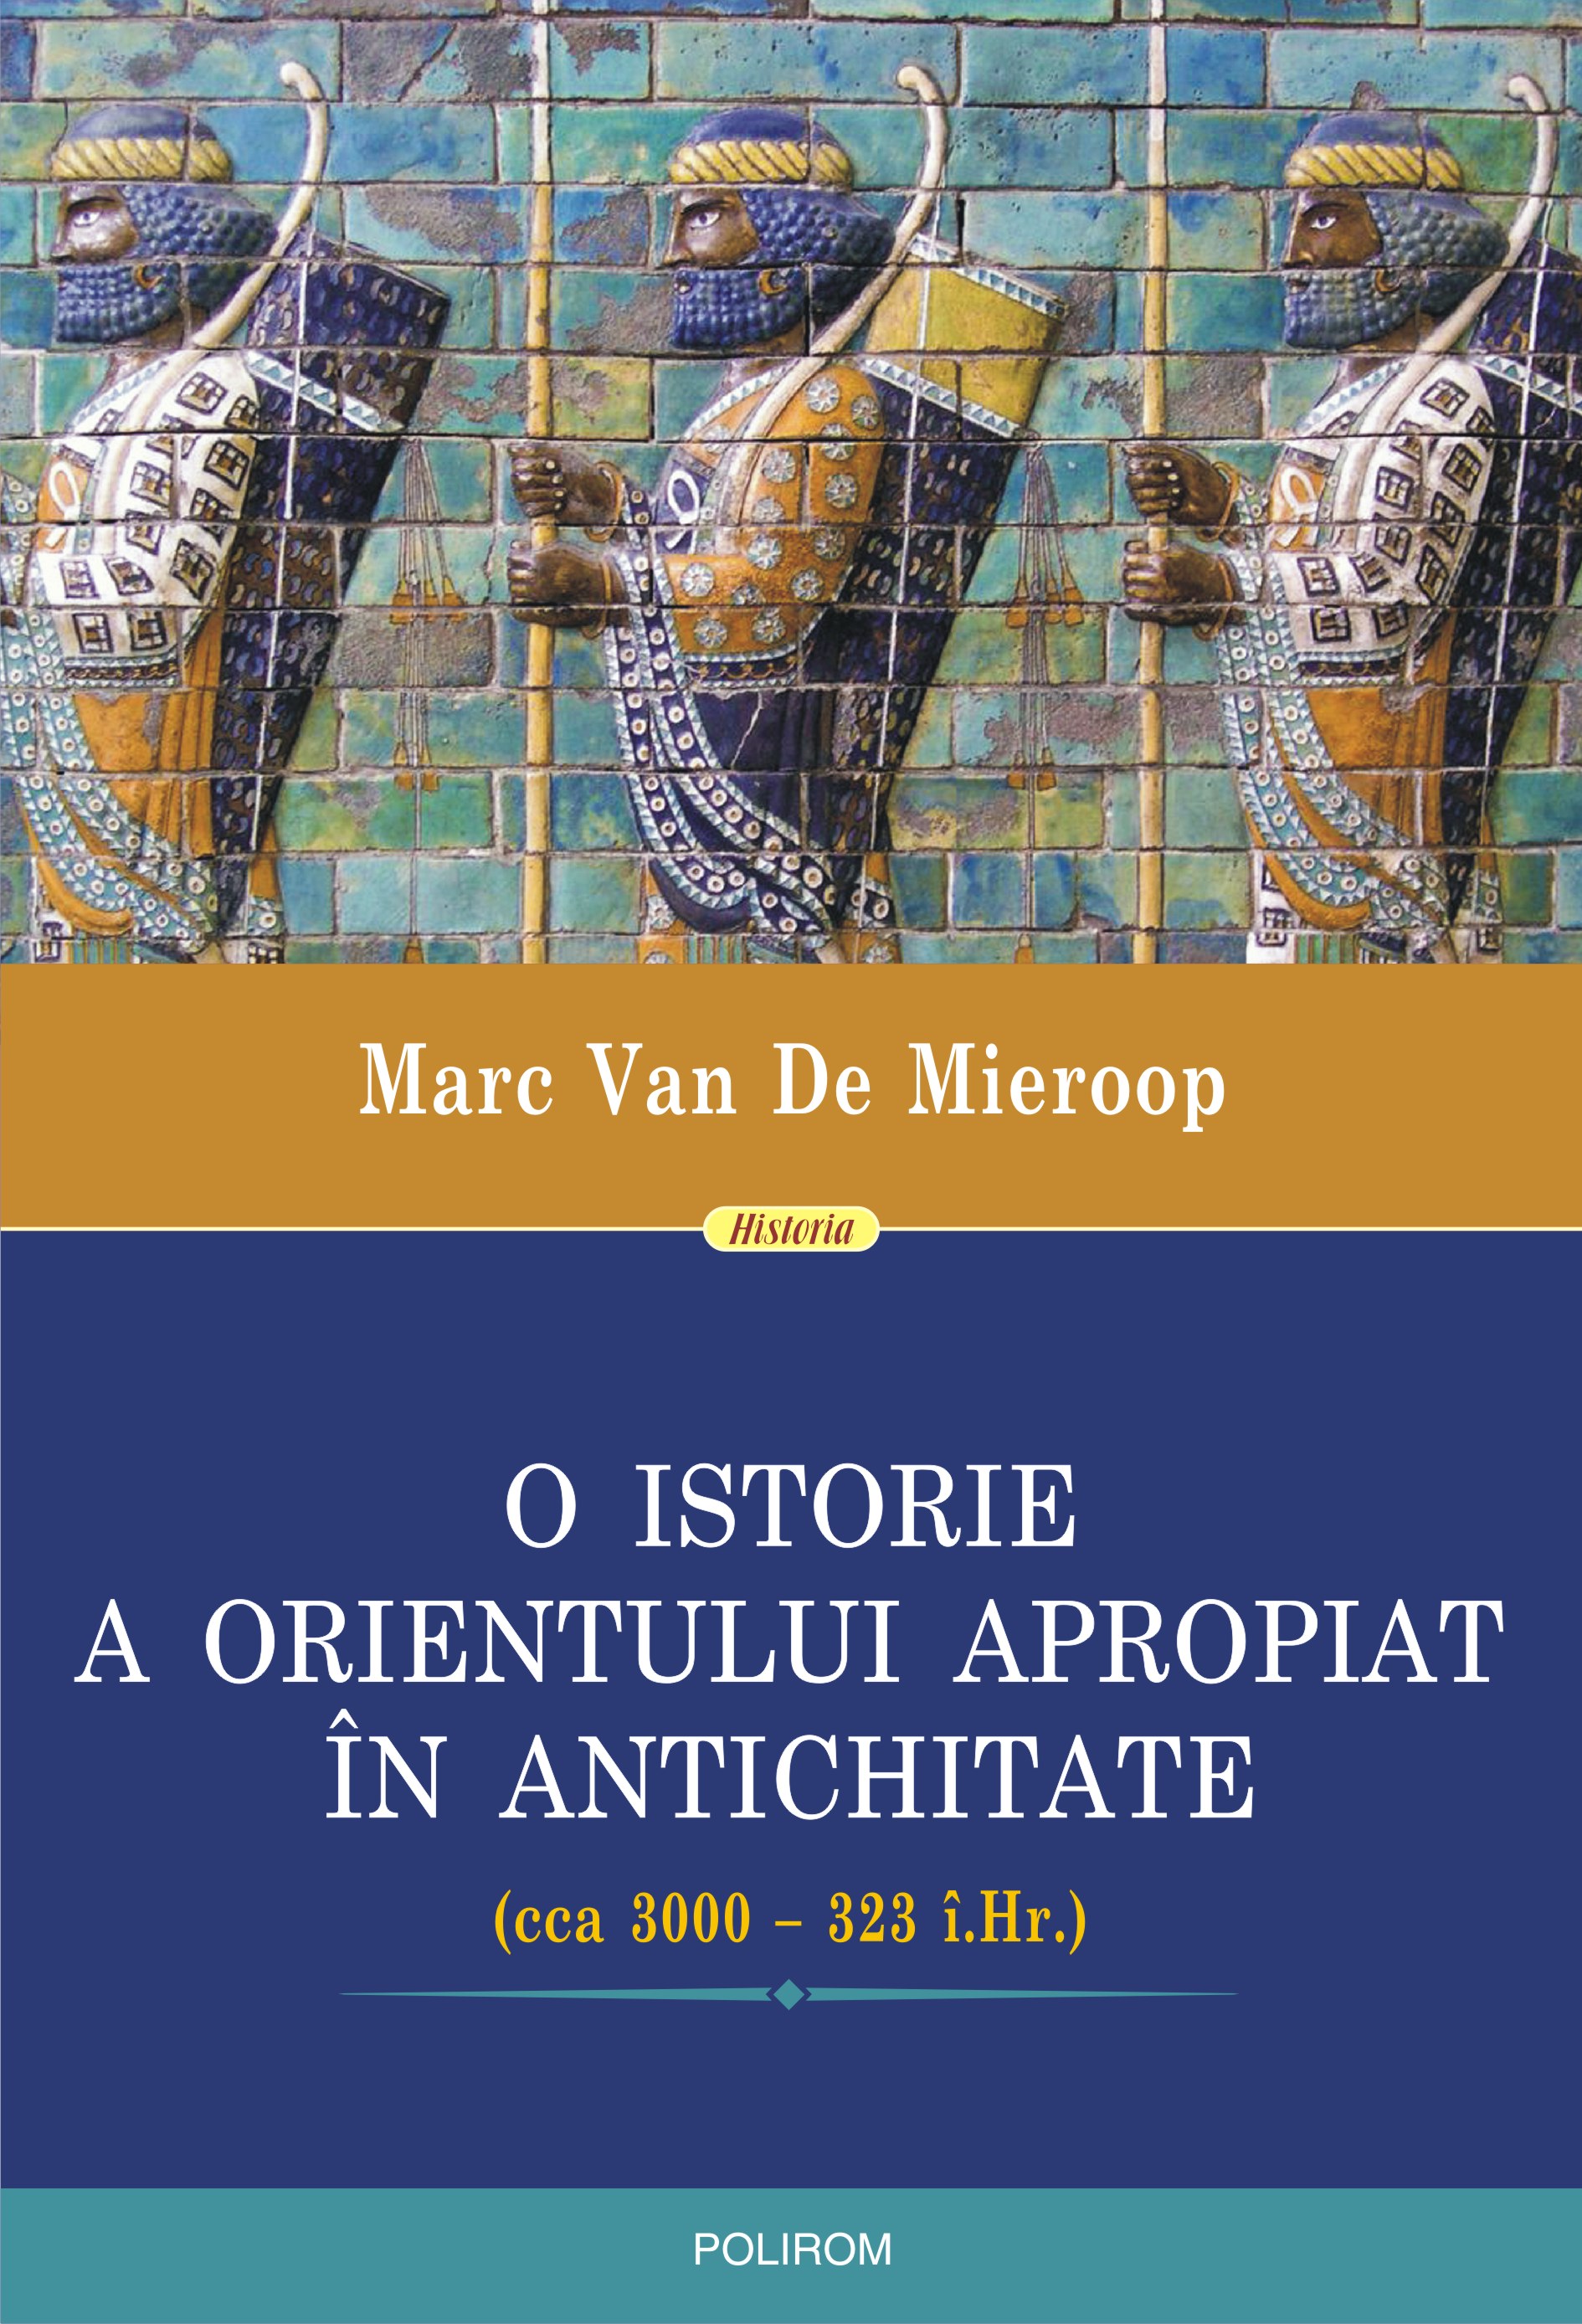 eBook O istorie a Orientului Apropiat in Antichitate (cca 3000 - 323 i.Hr.) - Marc Van De Mieroop